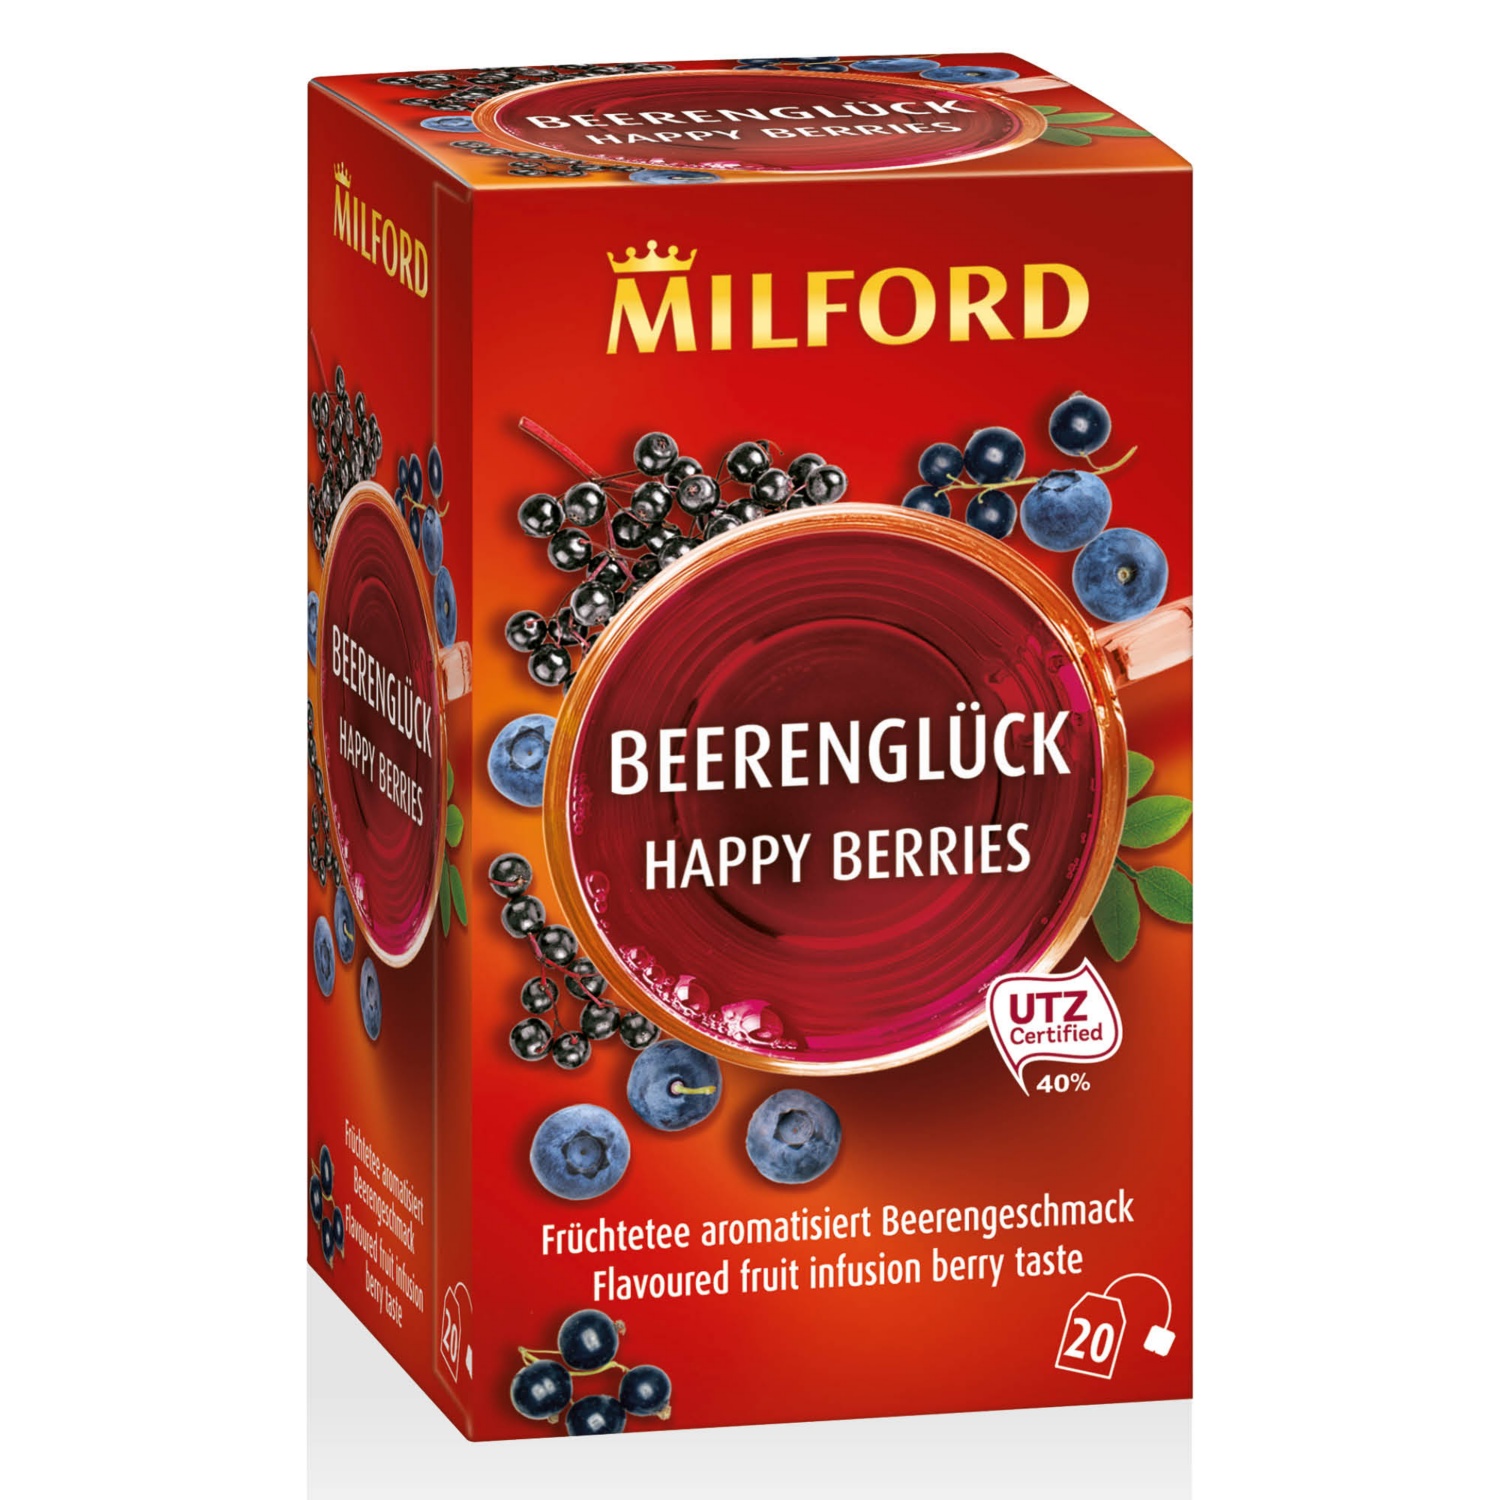 MILFORD Tea "Beerenglück", 20 darab